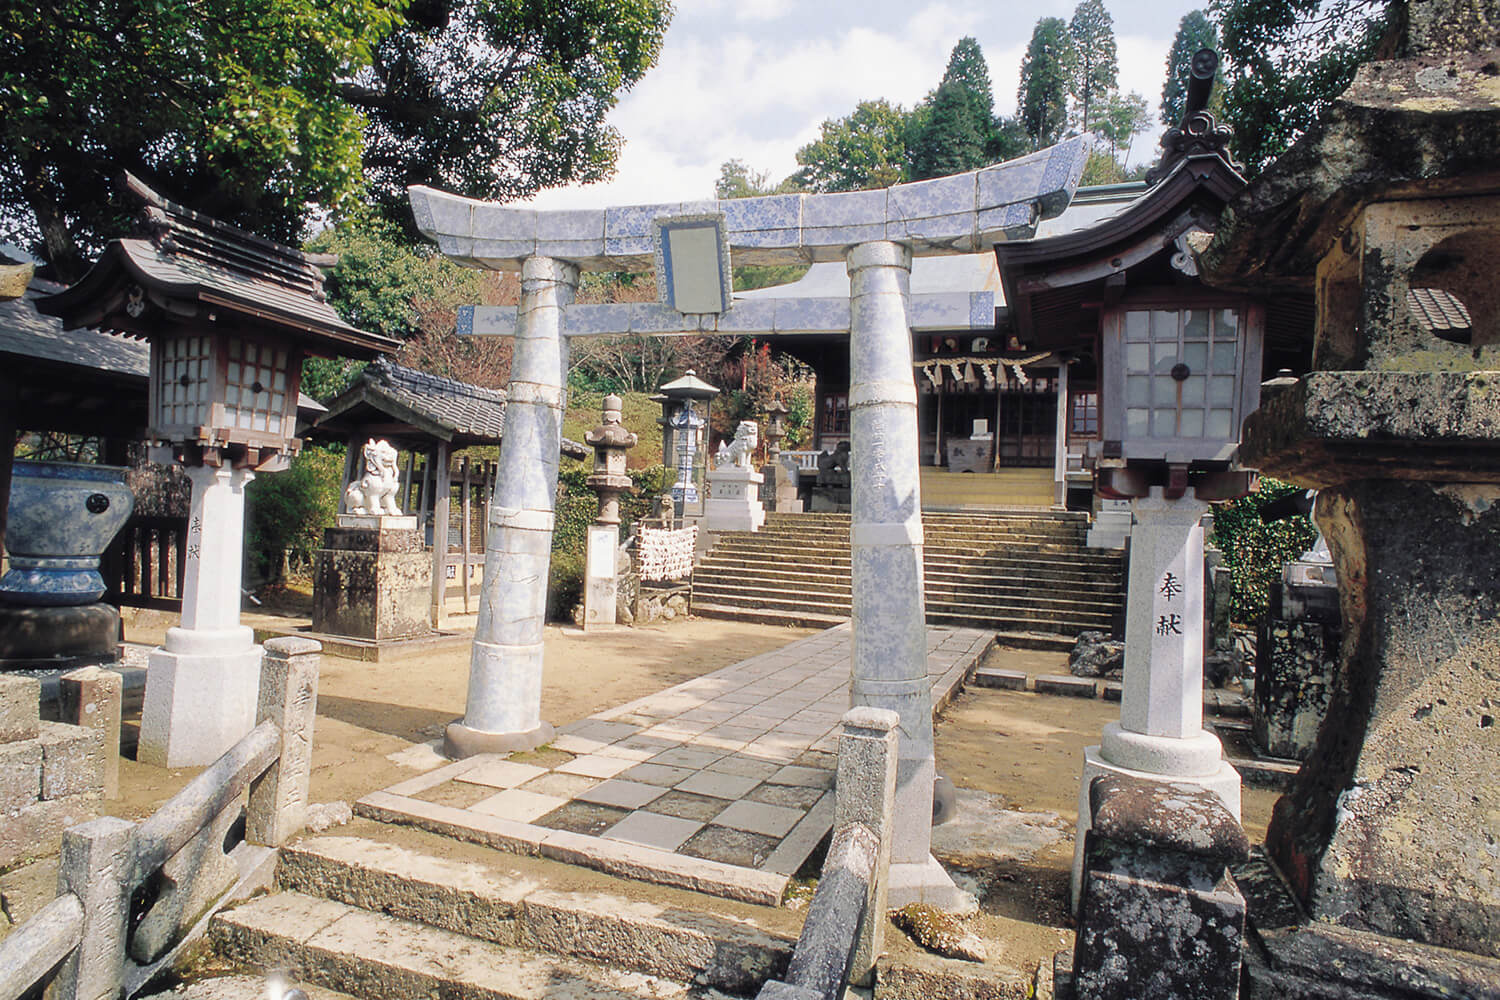 Shueyama-Shrine in Arita